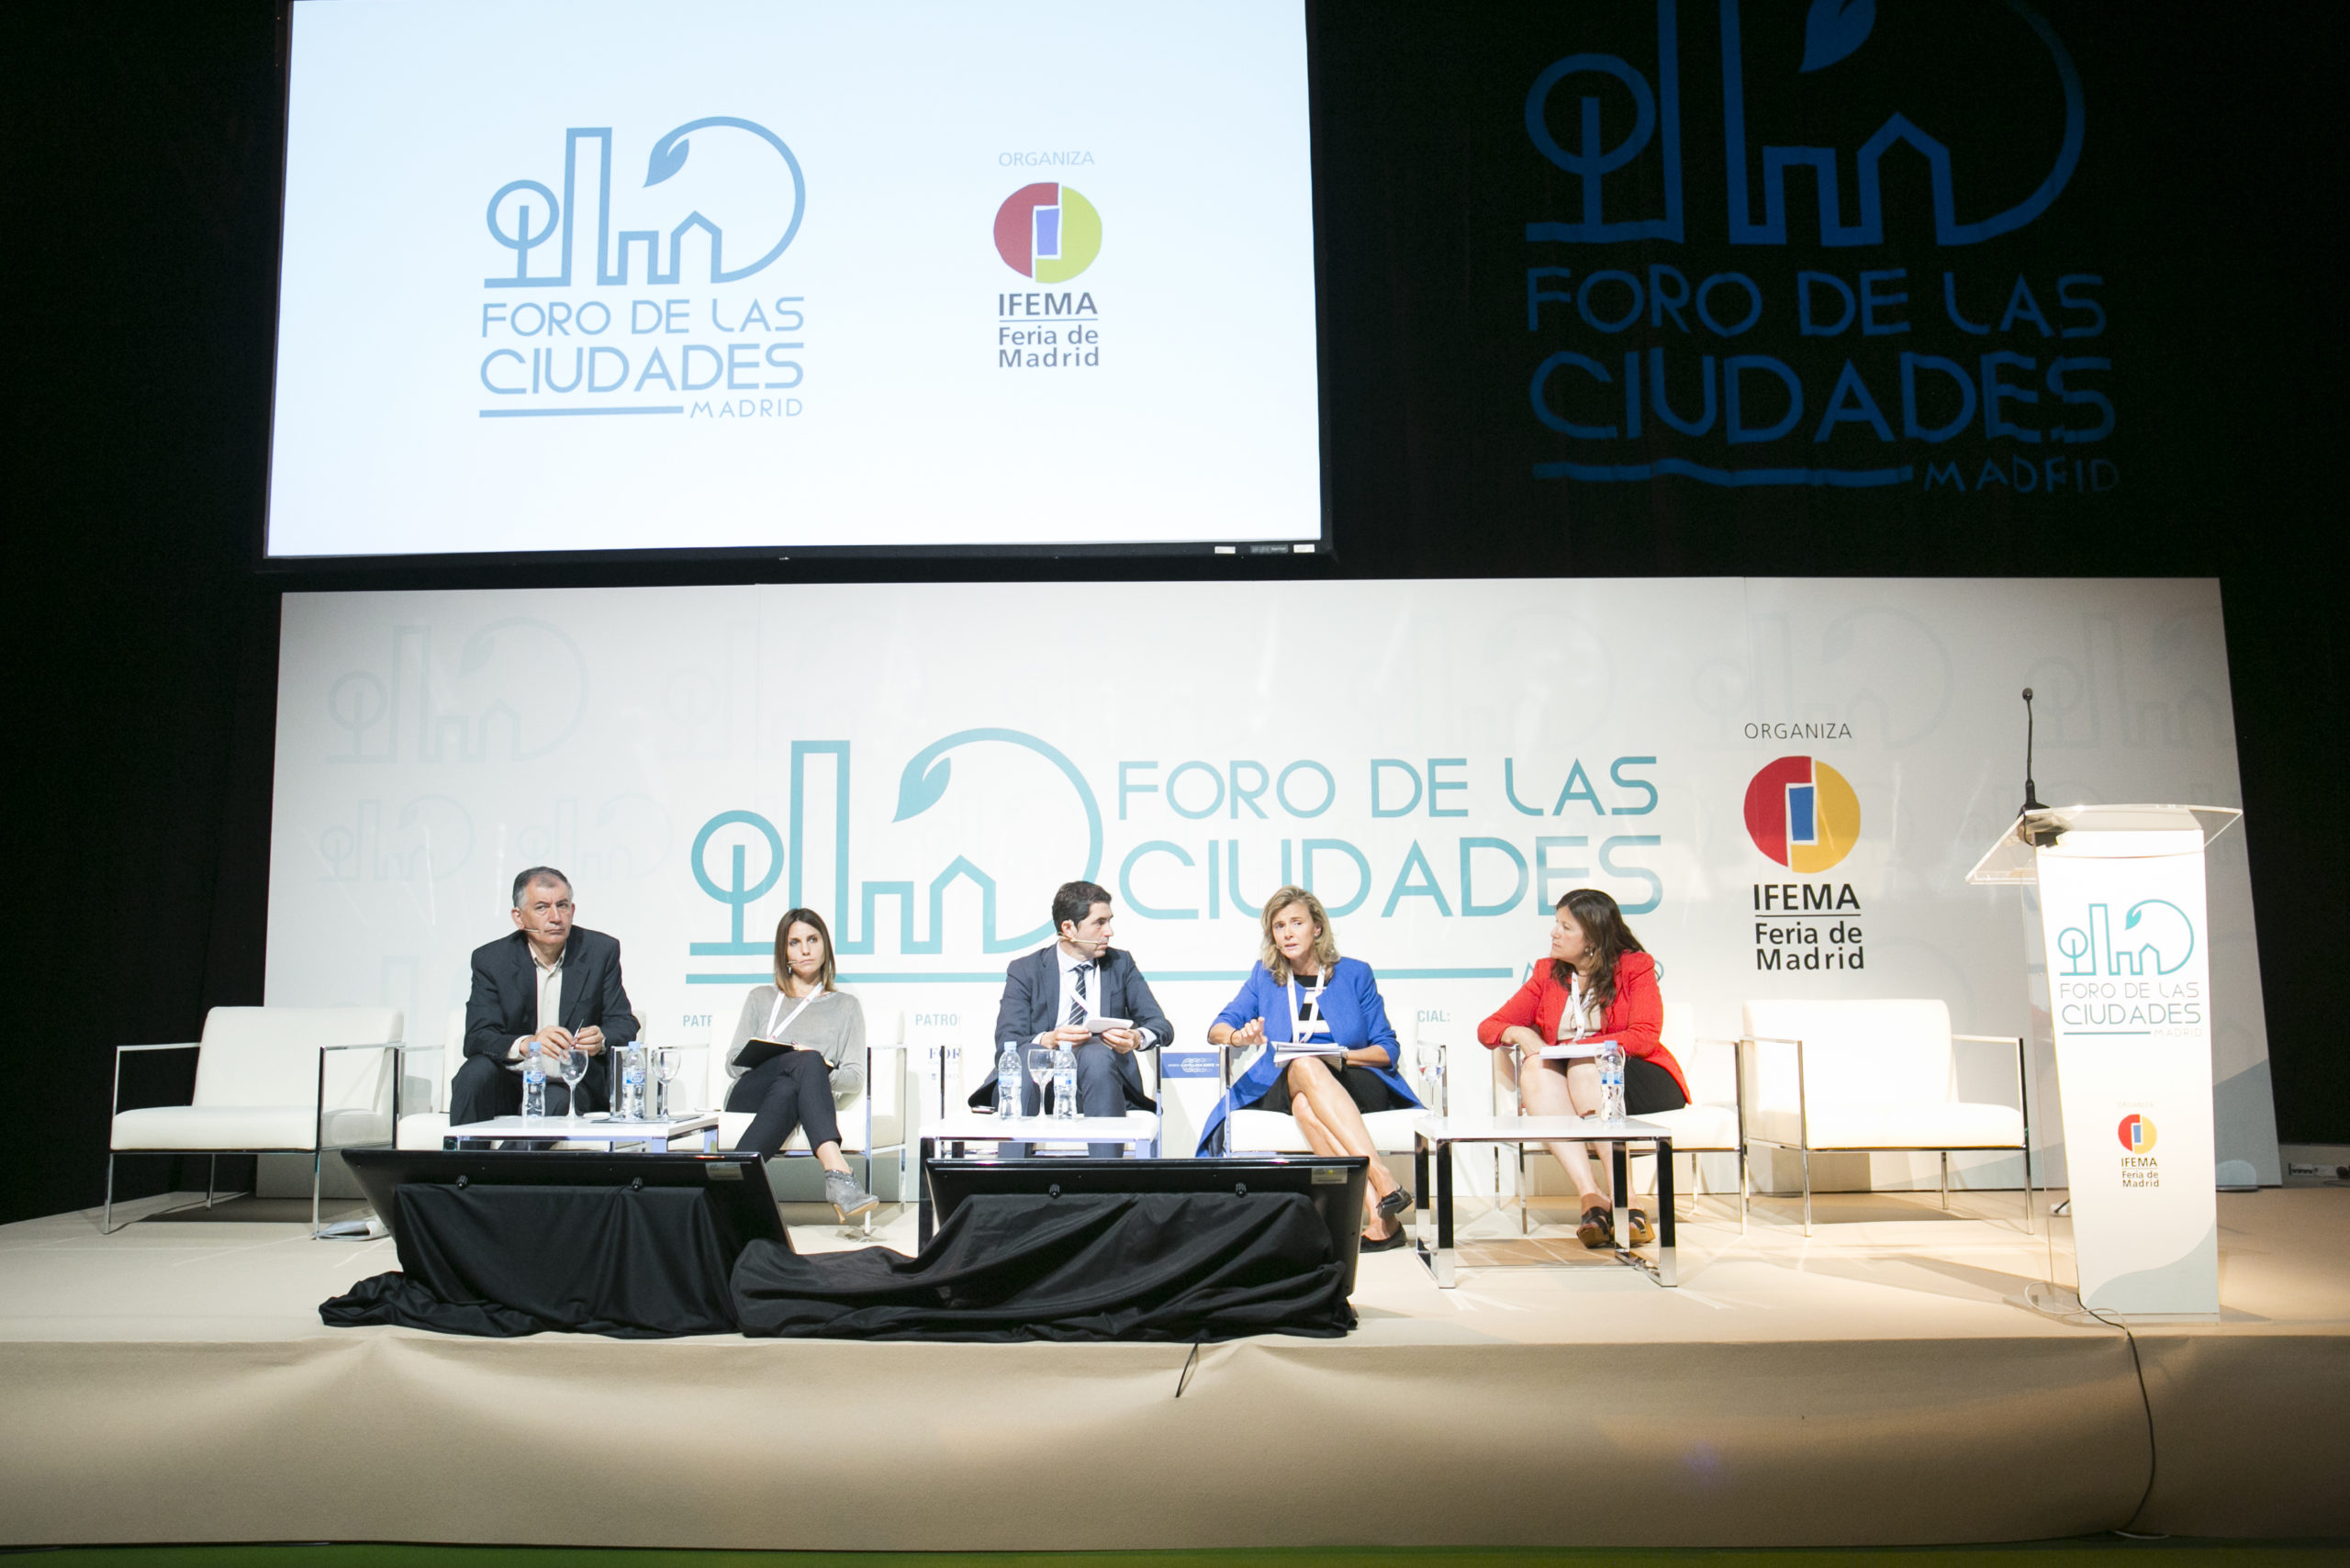 El FORO DE LAS CIUDADES DE MADRID 2021 propone un debate transversal sobre la nueva ciudad postpandemia